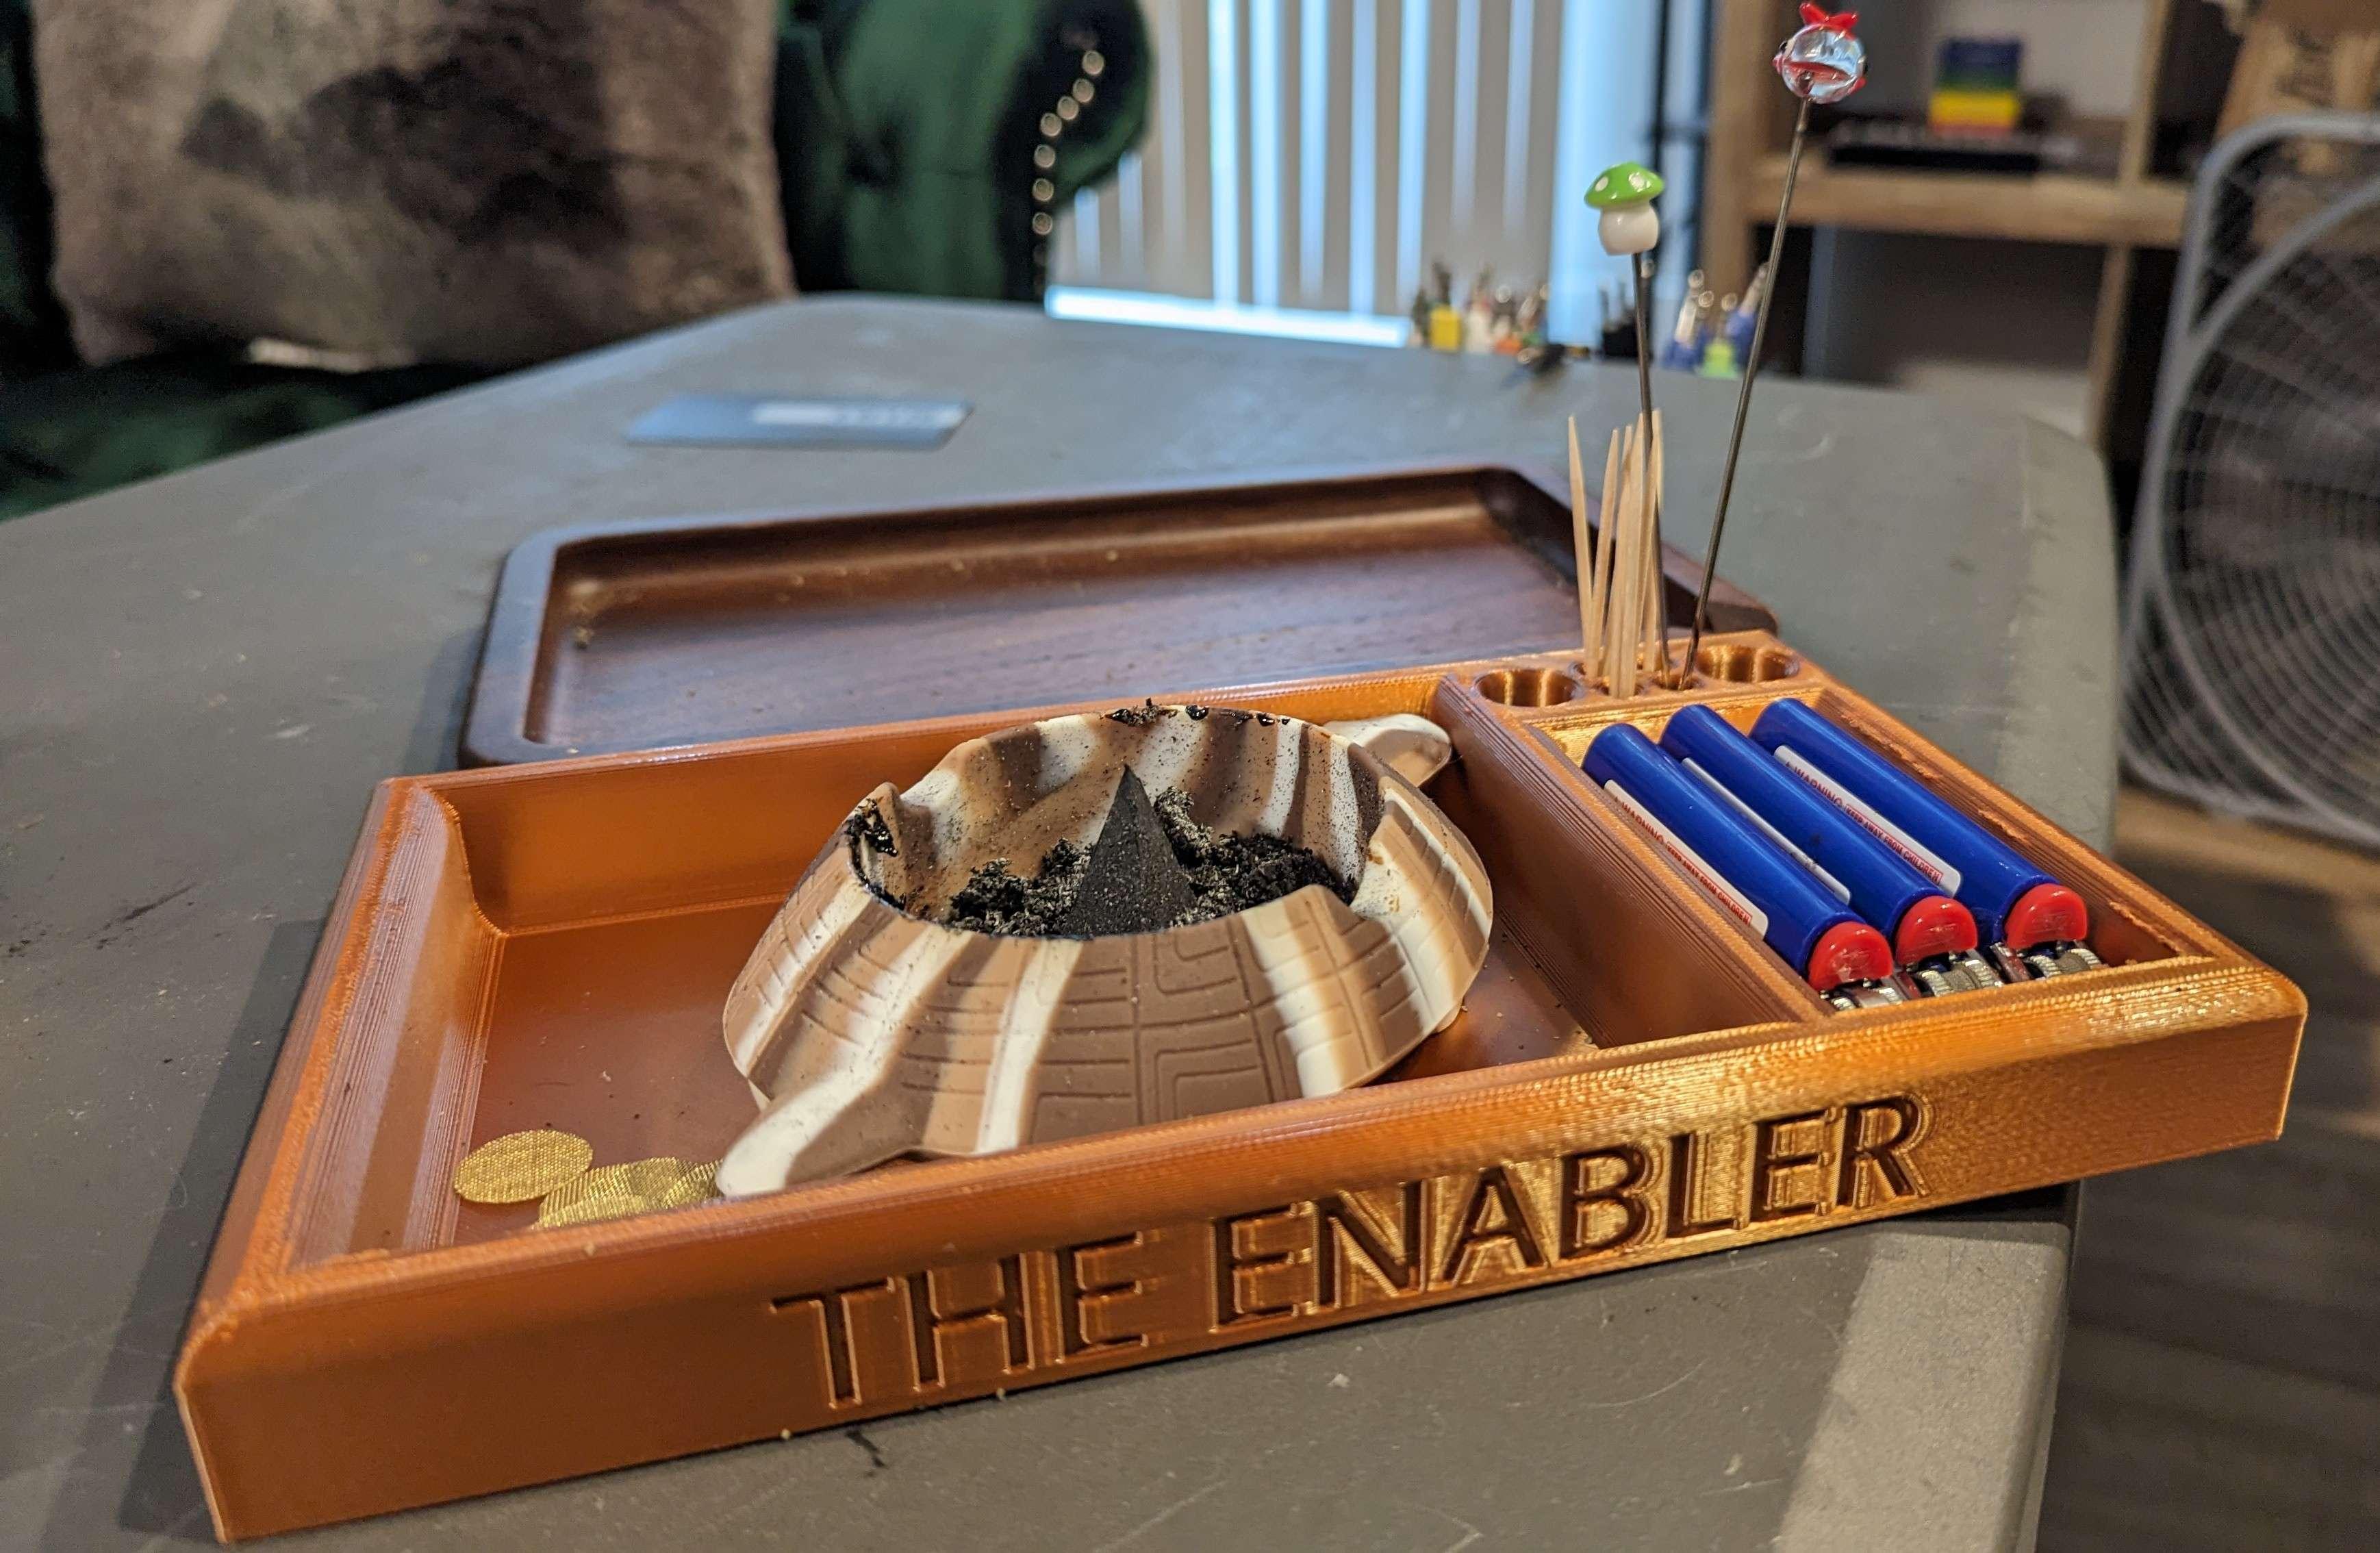 The Enabler 3d model